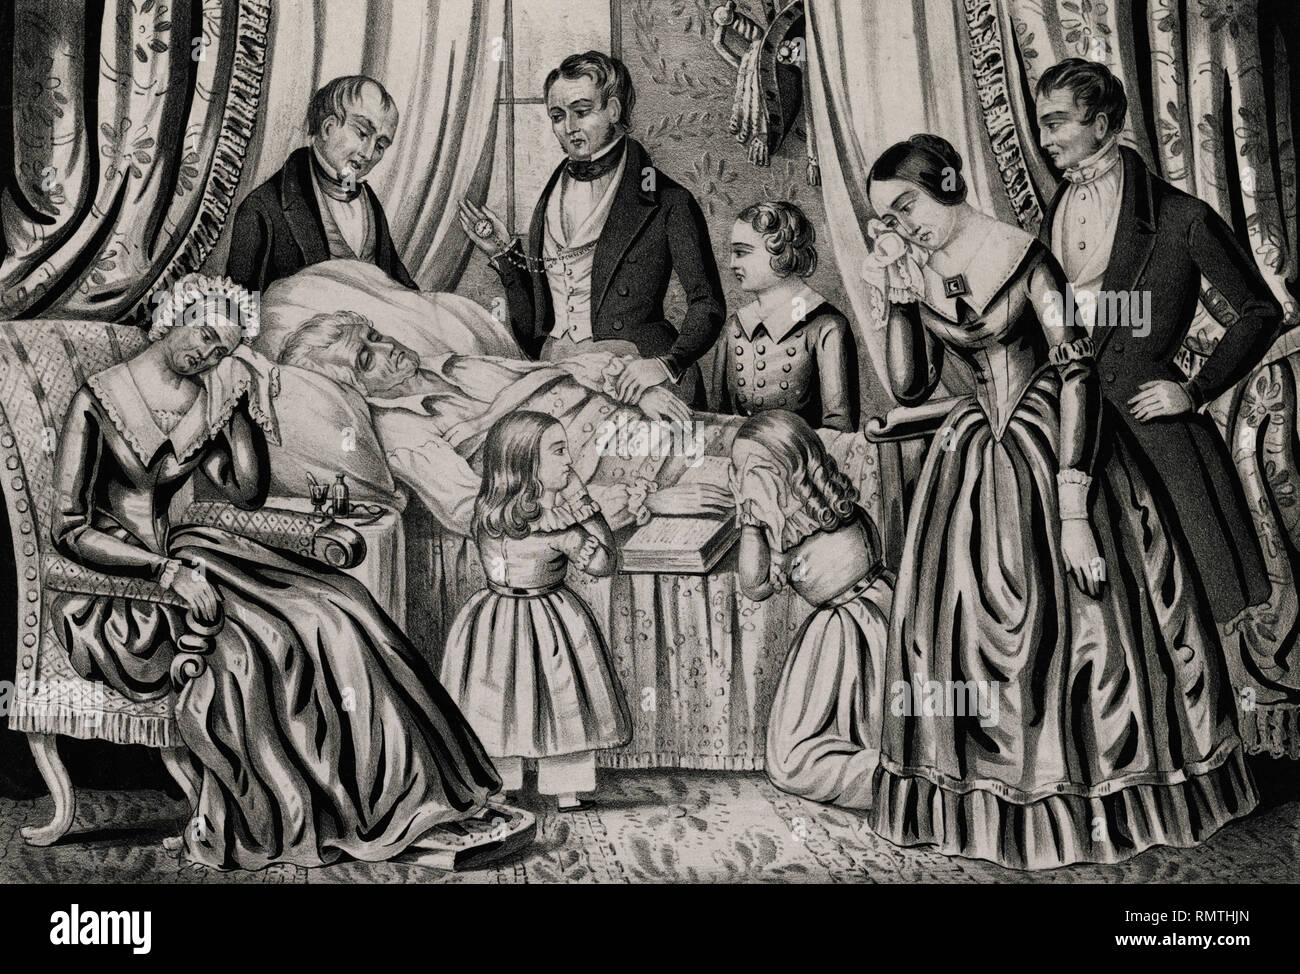 Tod von Gen'l Andrew Jackson, Lithographie von J. Baillie, New York, 1845 veröffentlicht. Stockfoto